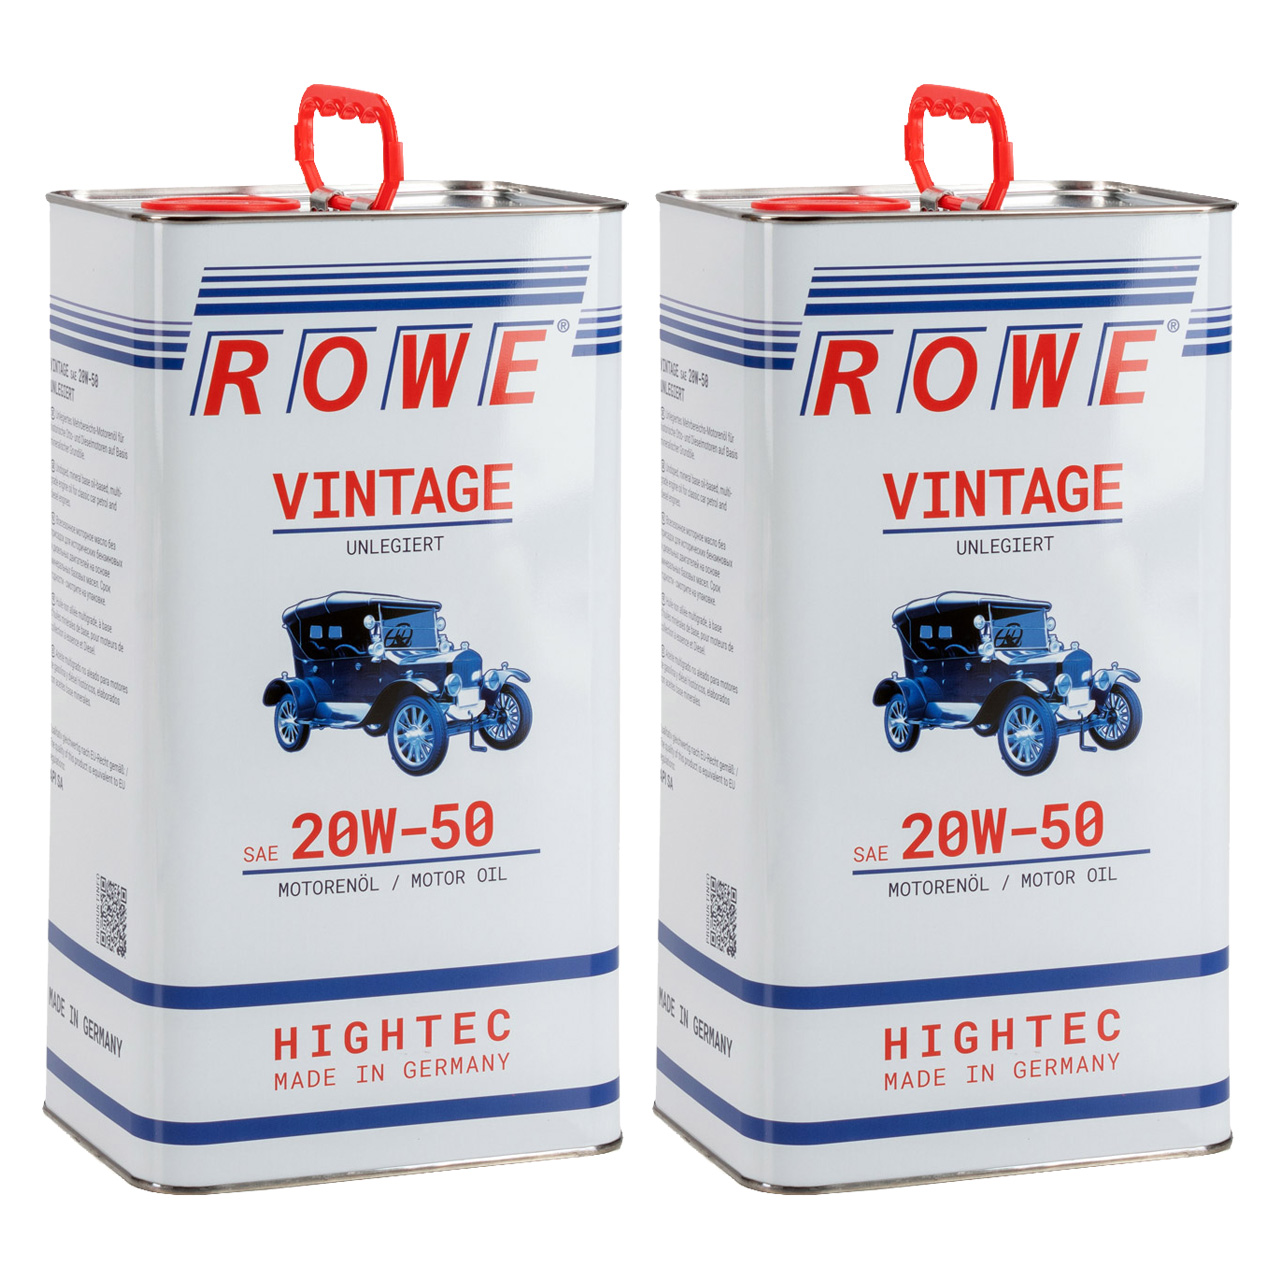 10 Liter ROWE Motoröl Öl VINTAGE Unlegiert SAE 20W50 Oldtimer Mehrbereichs-Öl